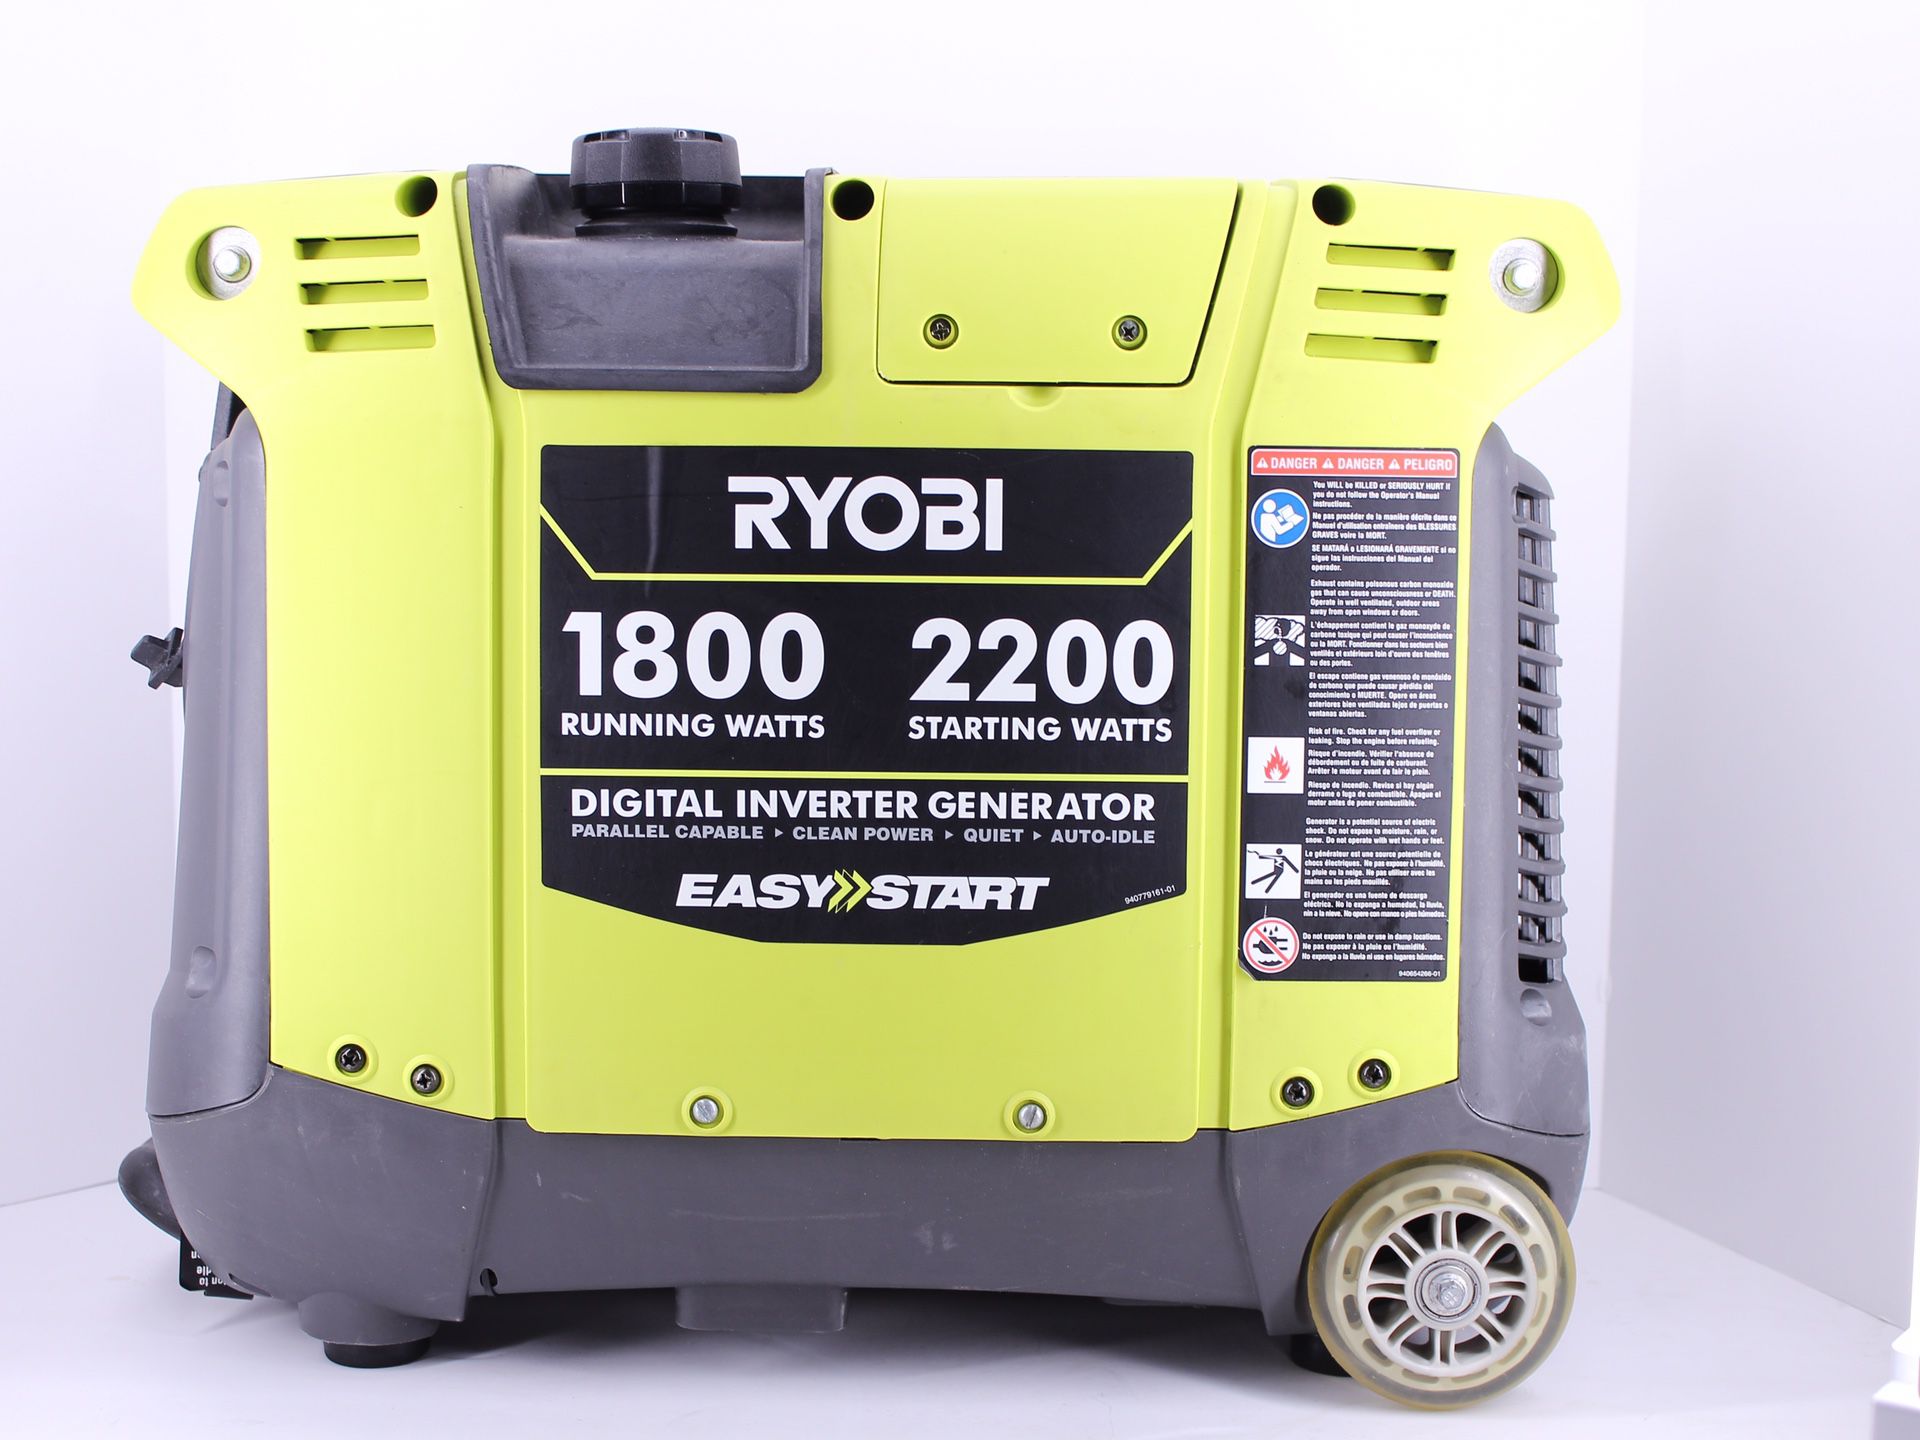 Ryobi RIY 2200A easy start generator